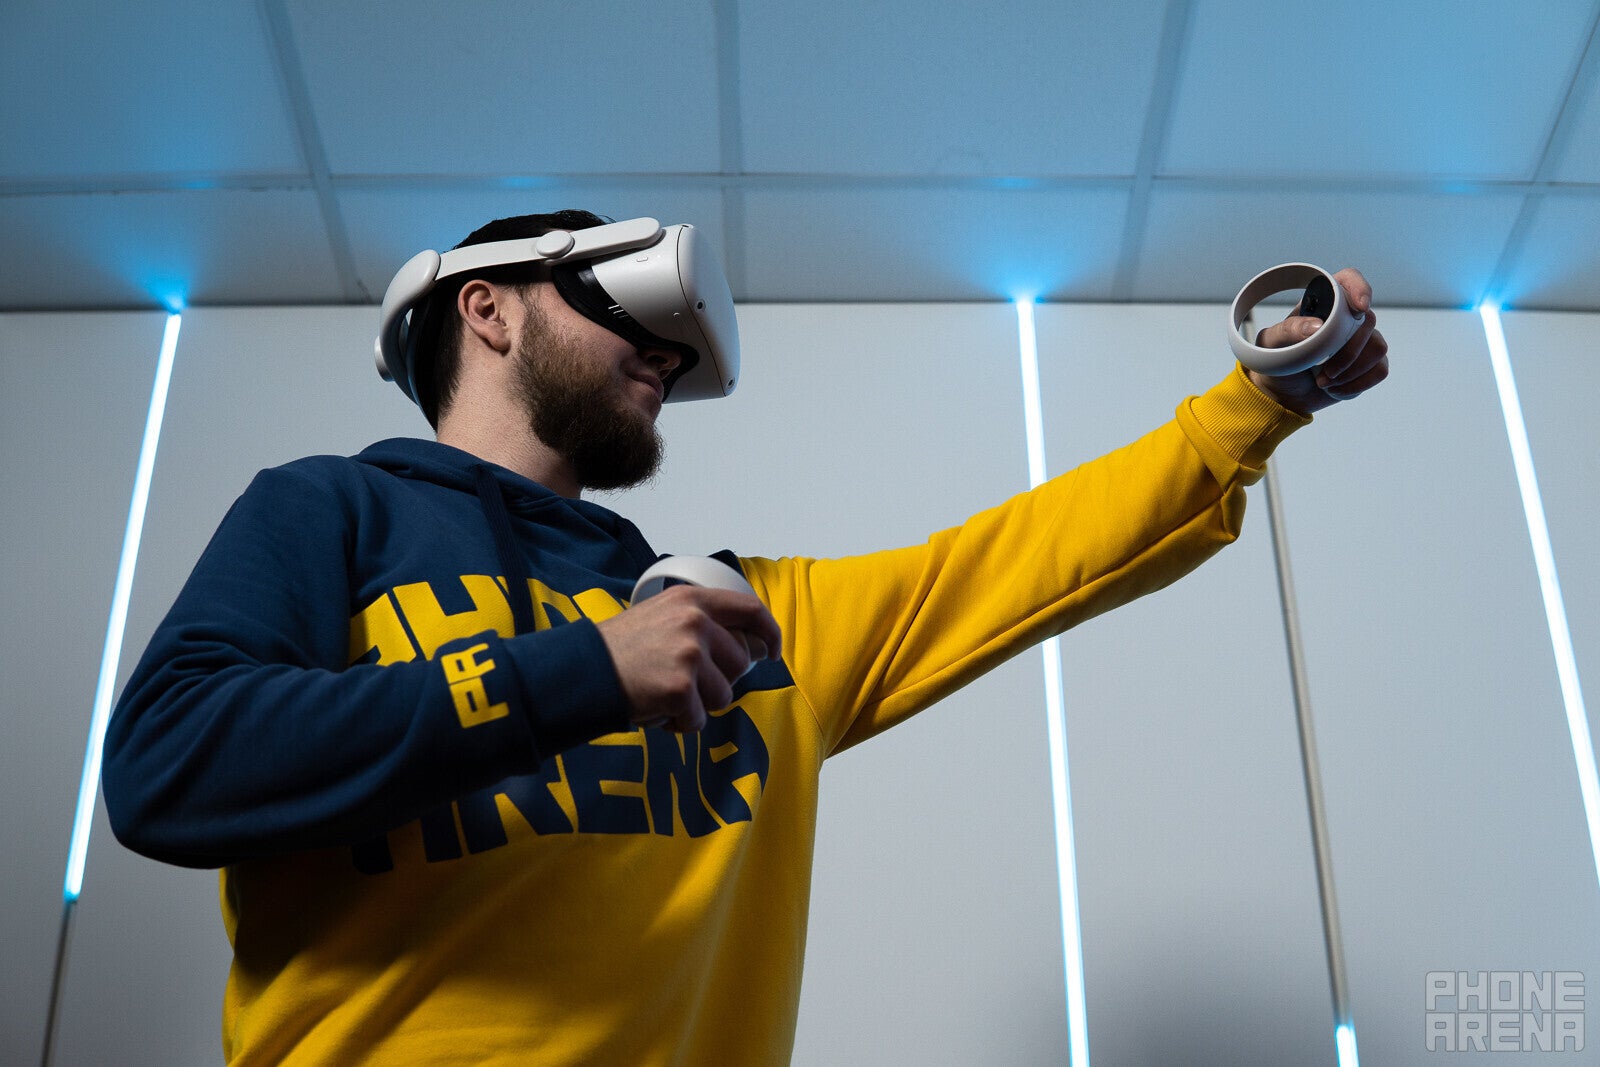 แอพและประสบการณ์ Meta Quest 2 ที่ดีที่สุด - ทำมากขึ้นด้วยชุดหูฟัง VR ของคุณ!